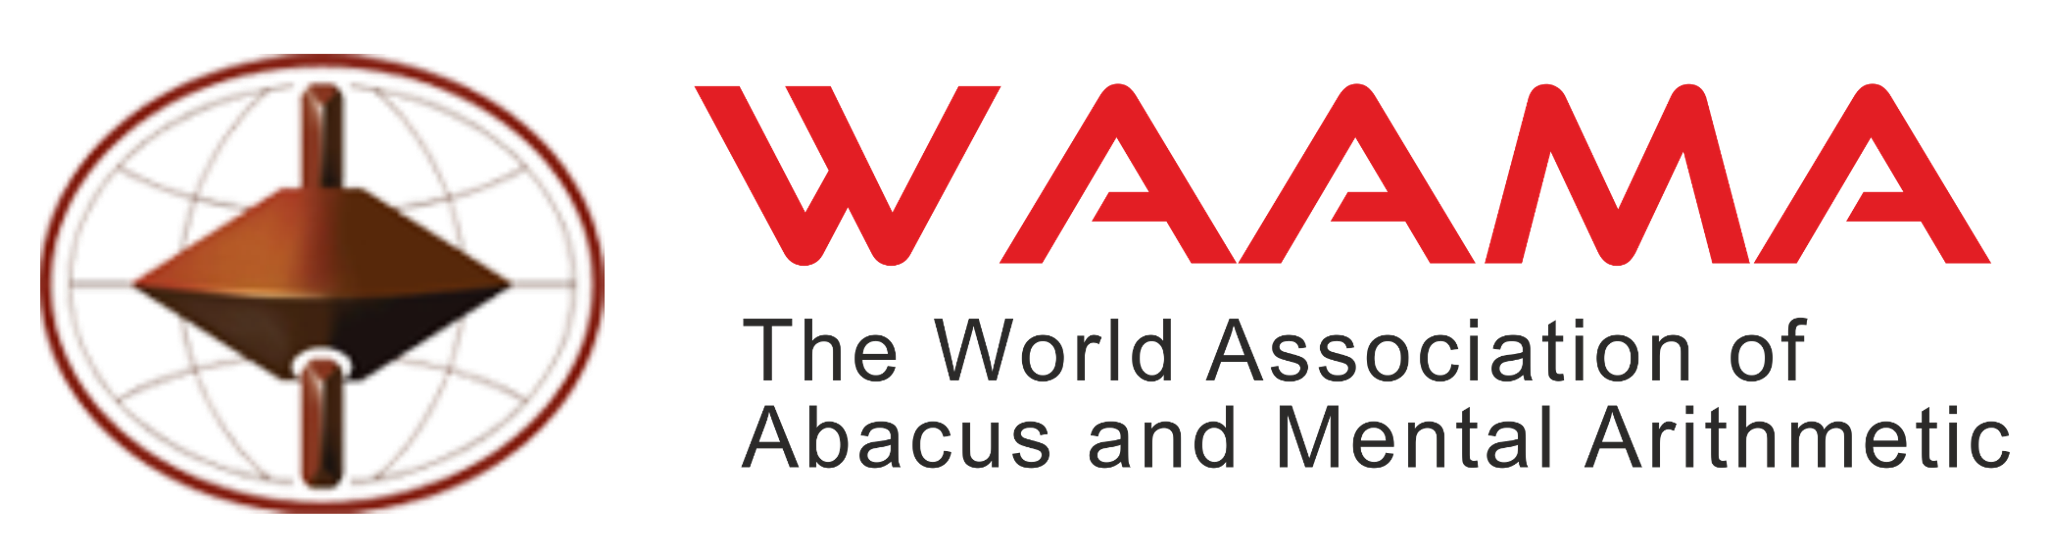 Waama logo 1